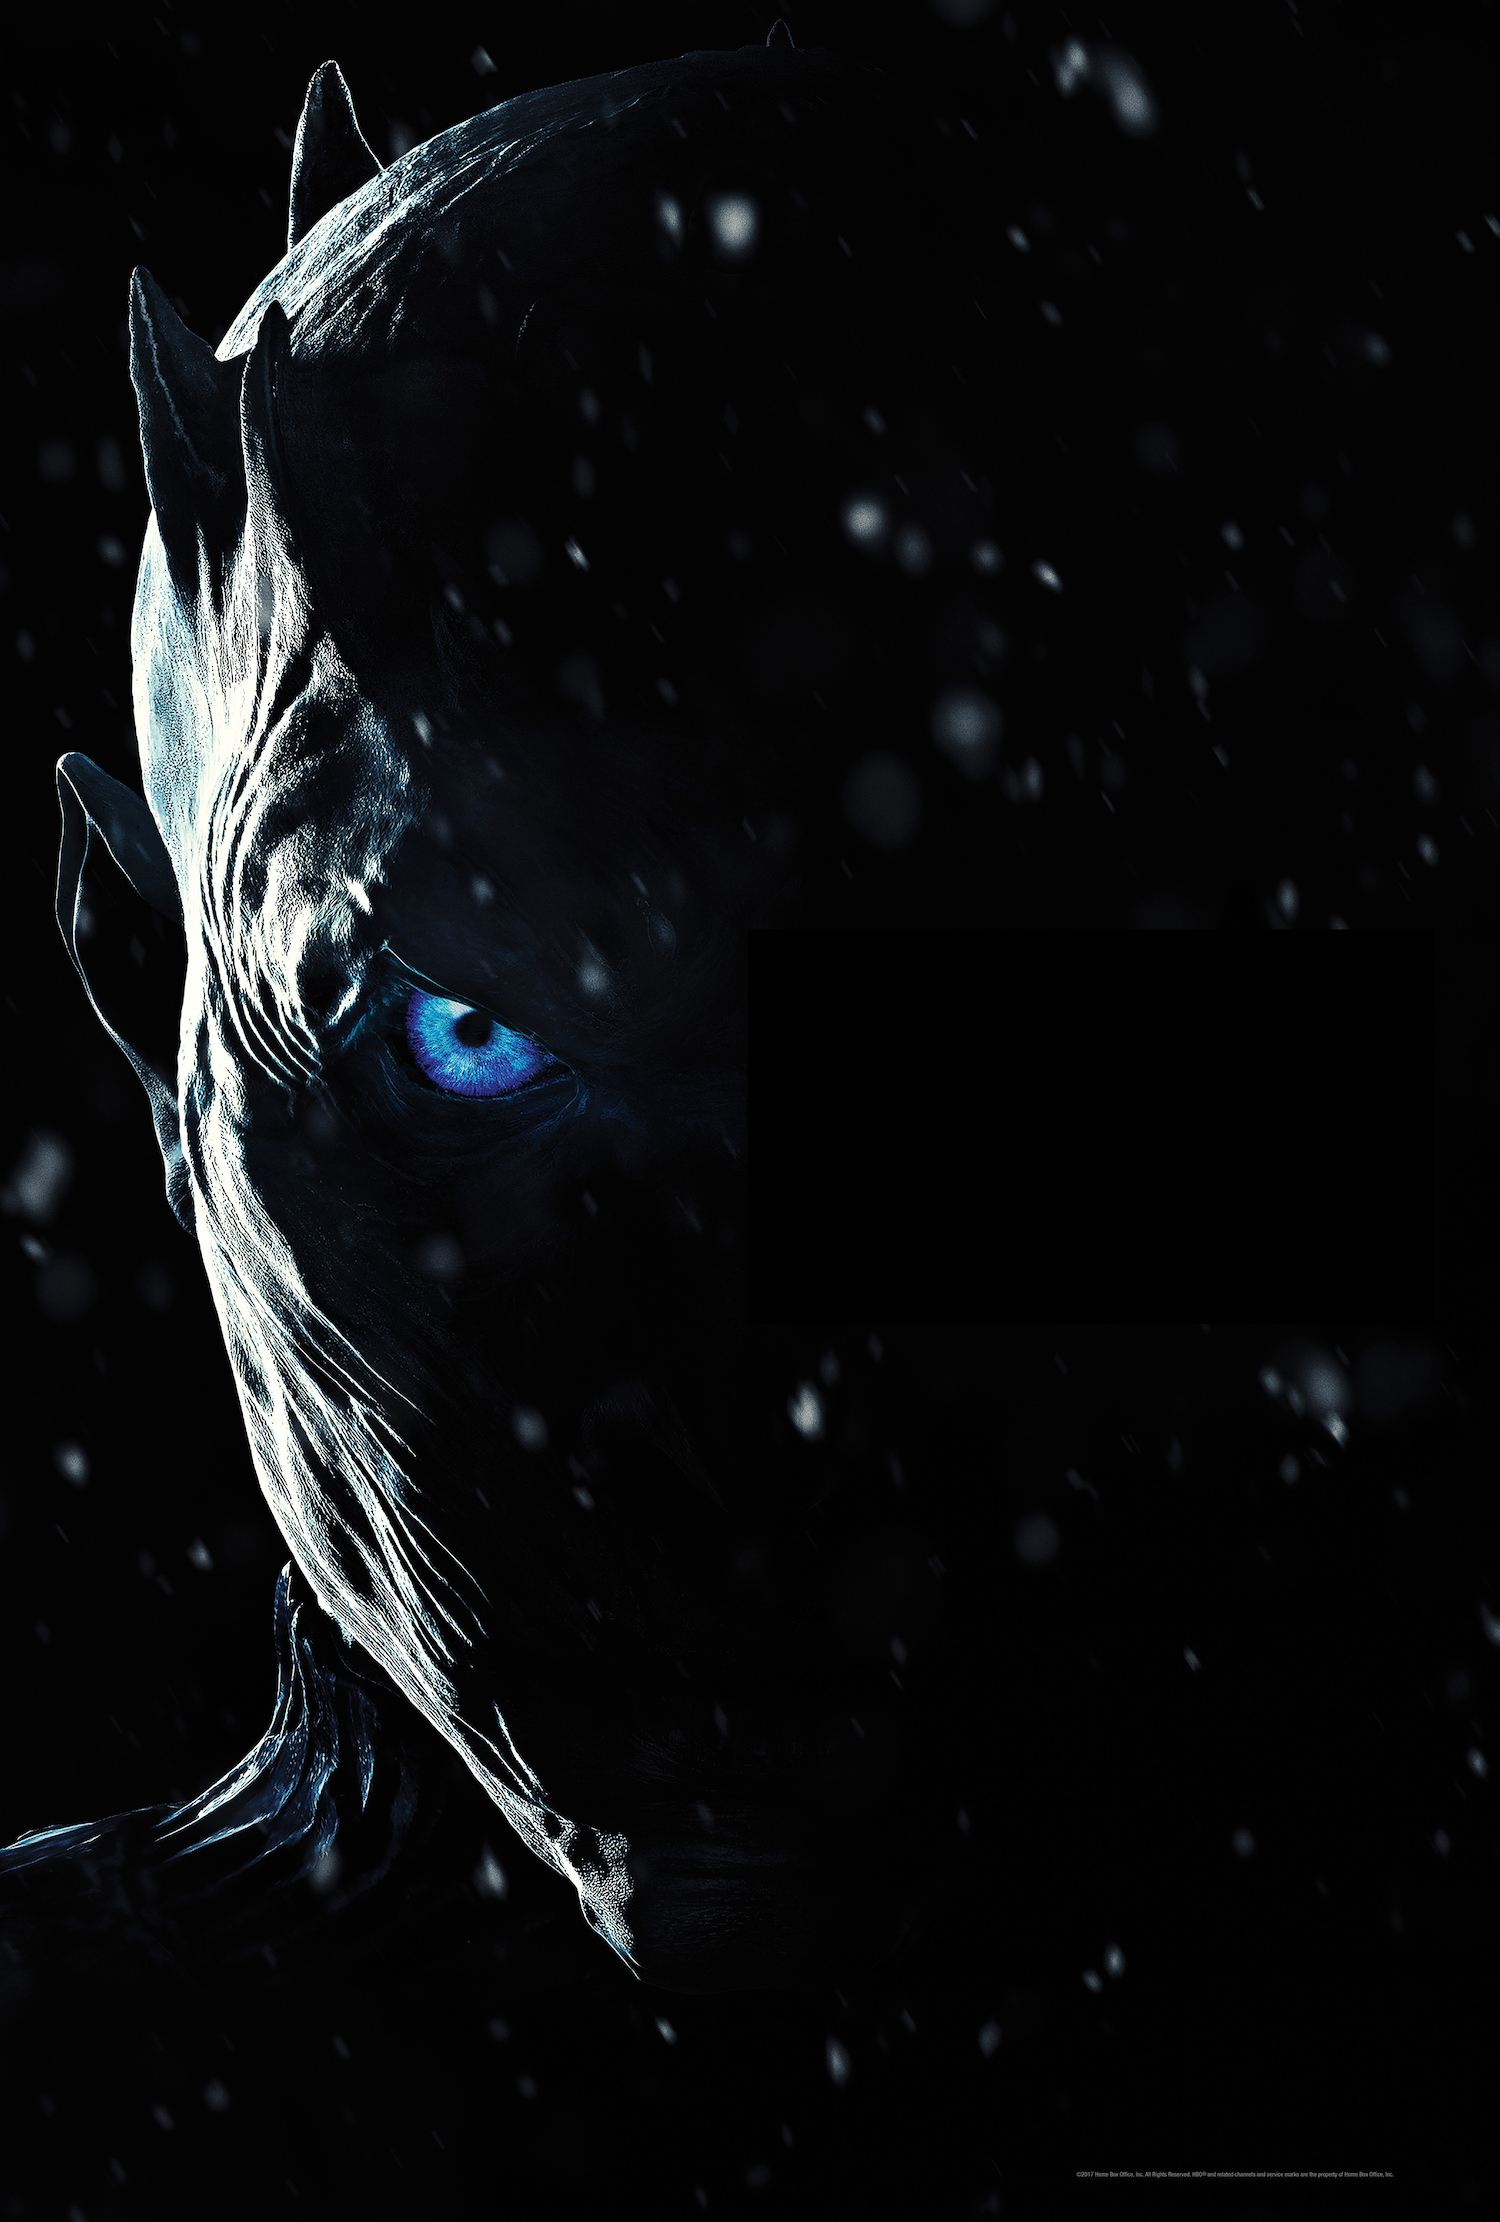 Gelo e fogo se encontram na 7ª Temporada de “Game of Thrones”